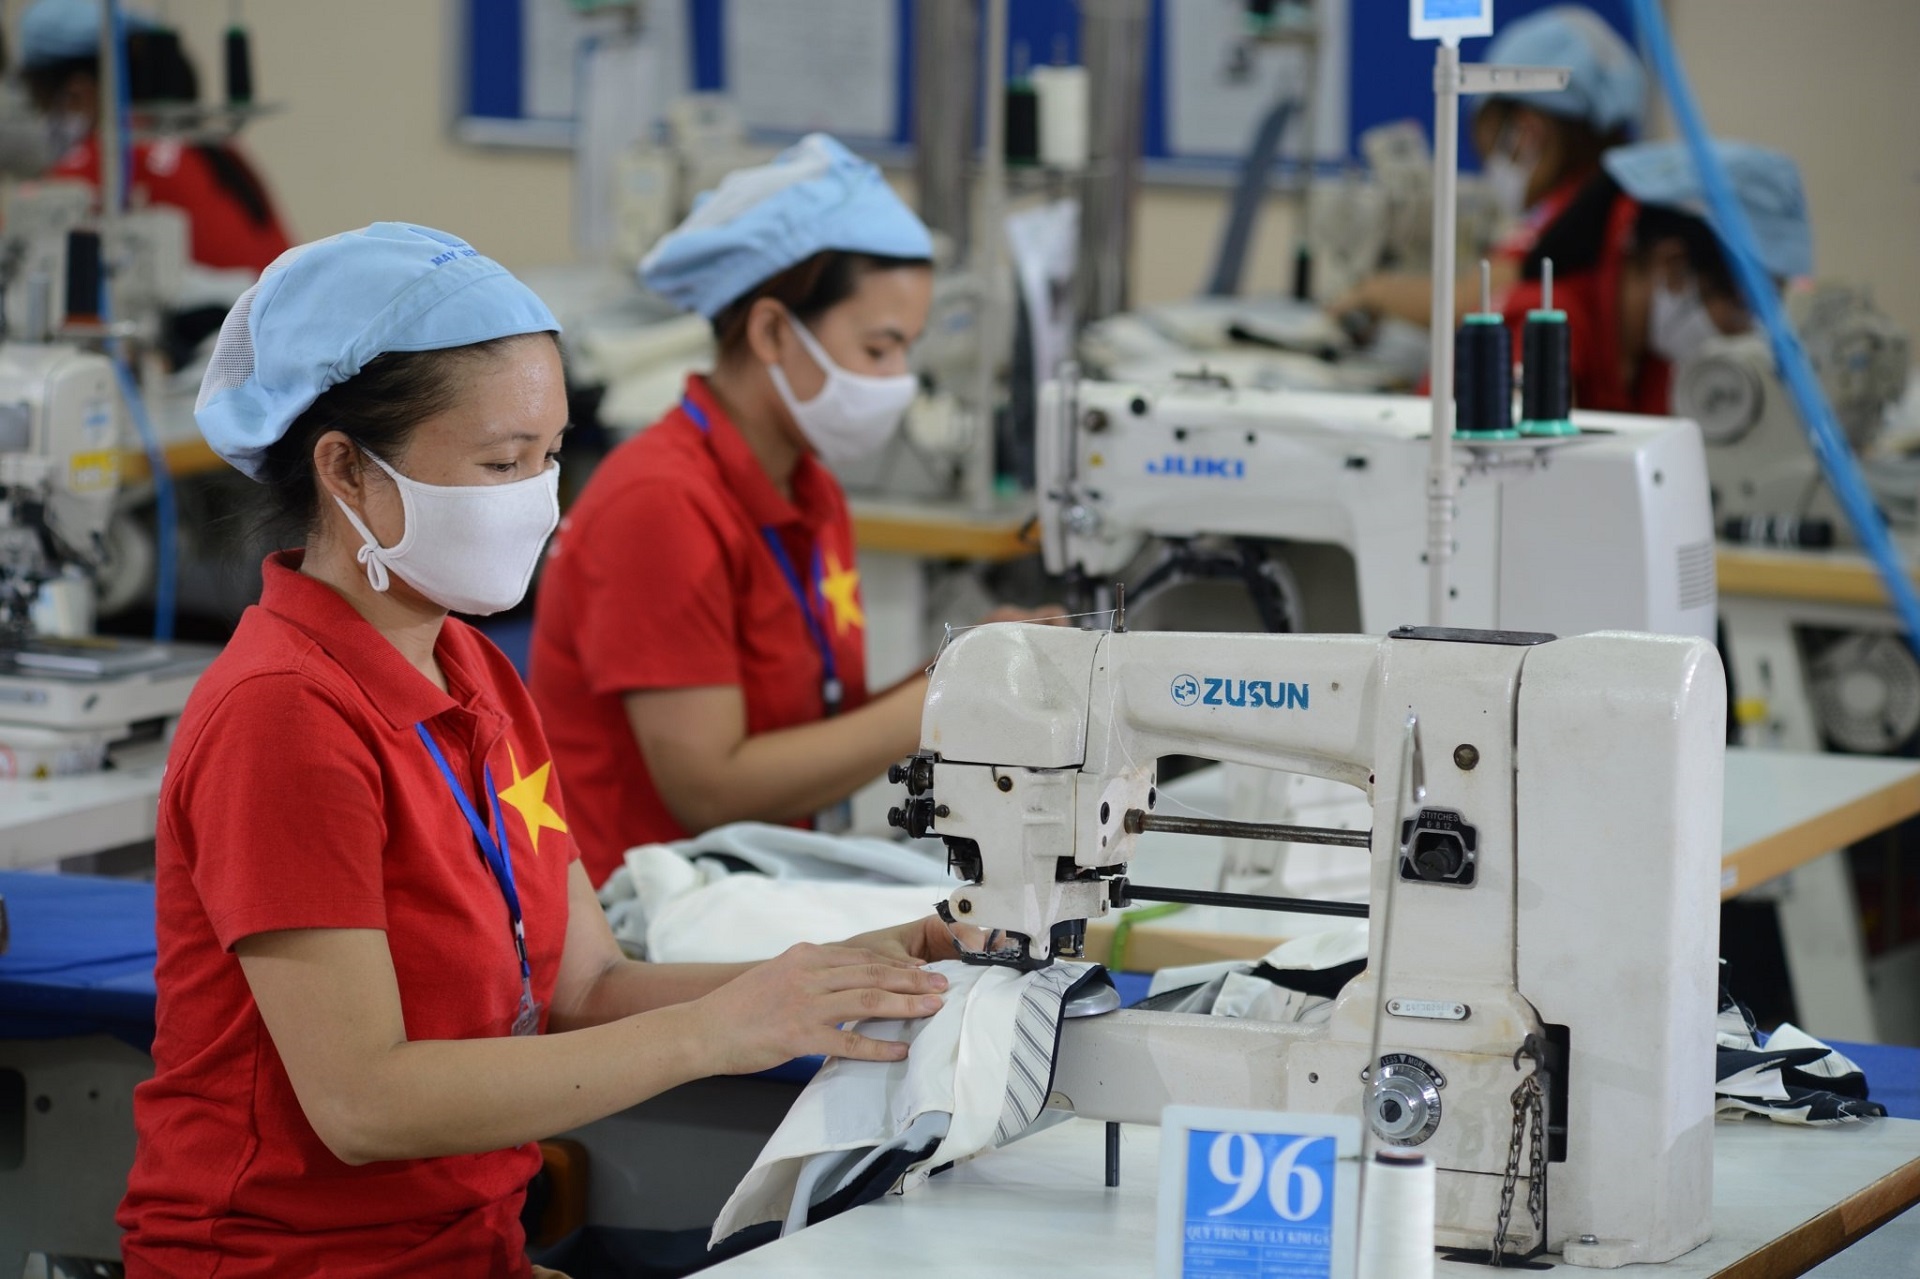 Kinh nghiệm về quản trị rủi ro trong chuỗi cung ứng của doanh nghiệp dệt may trên thế giới và bài học cho Việt Nam